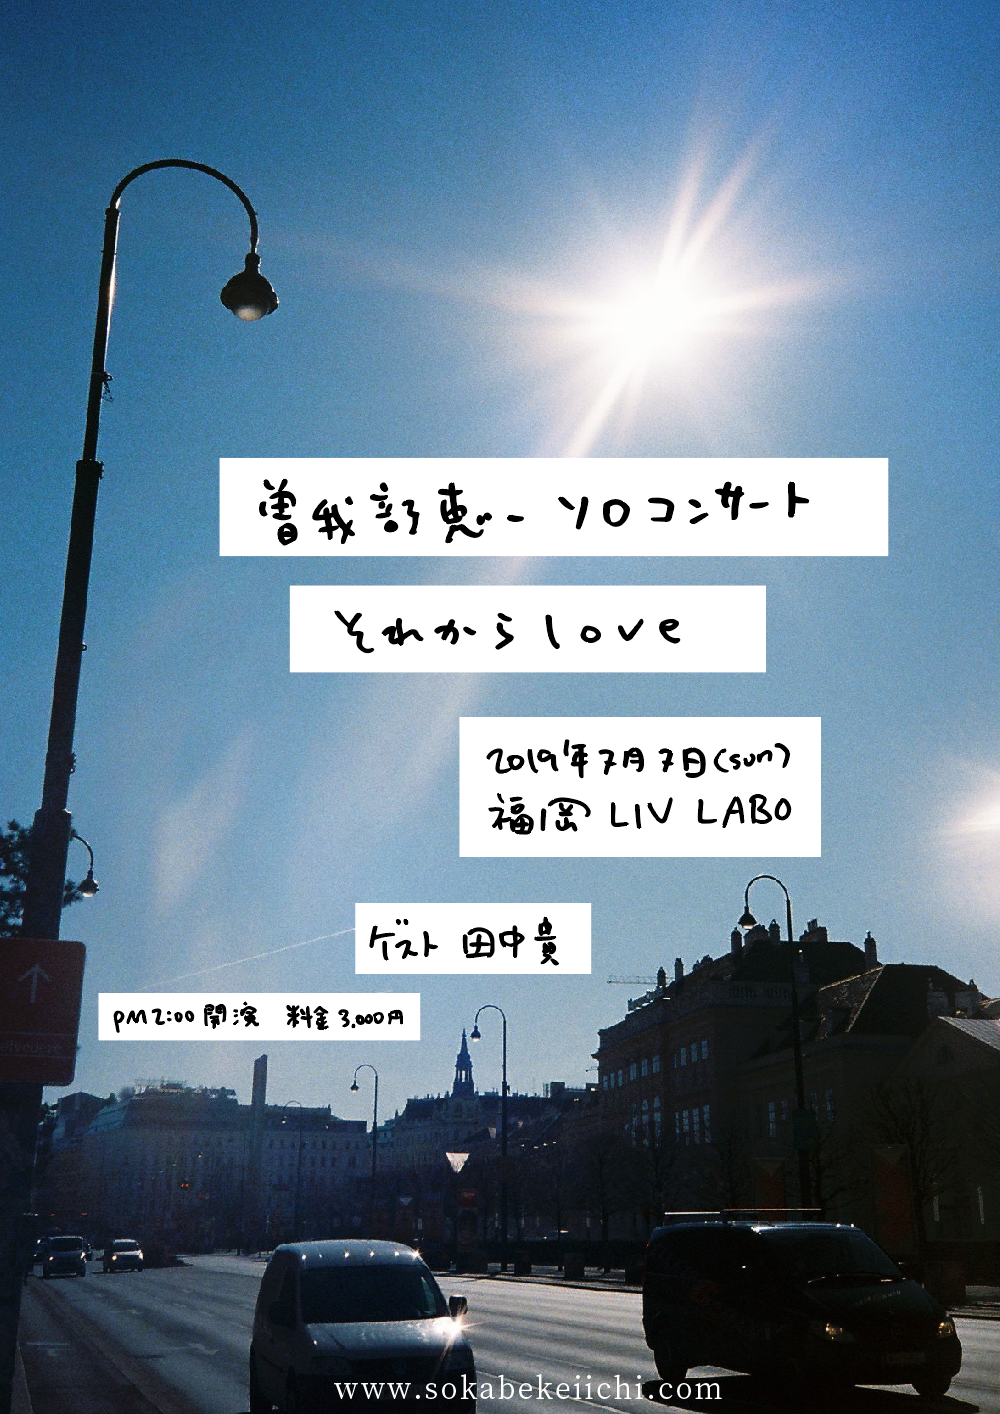 7/7 曽我部恵一ソロコンサート 「それからlove」 @福岡 LIV LABOが決定しました！